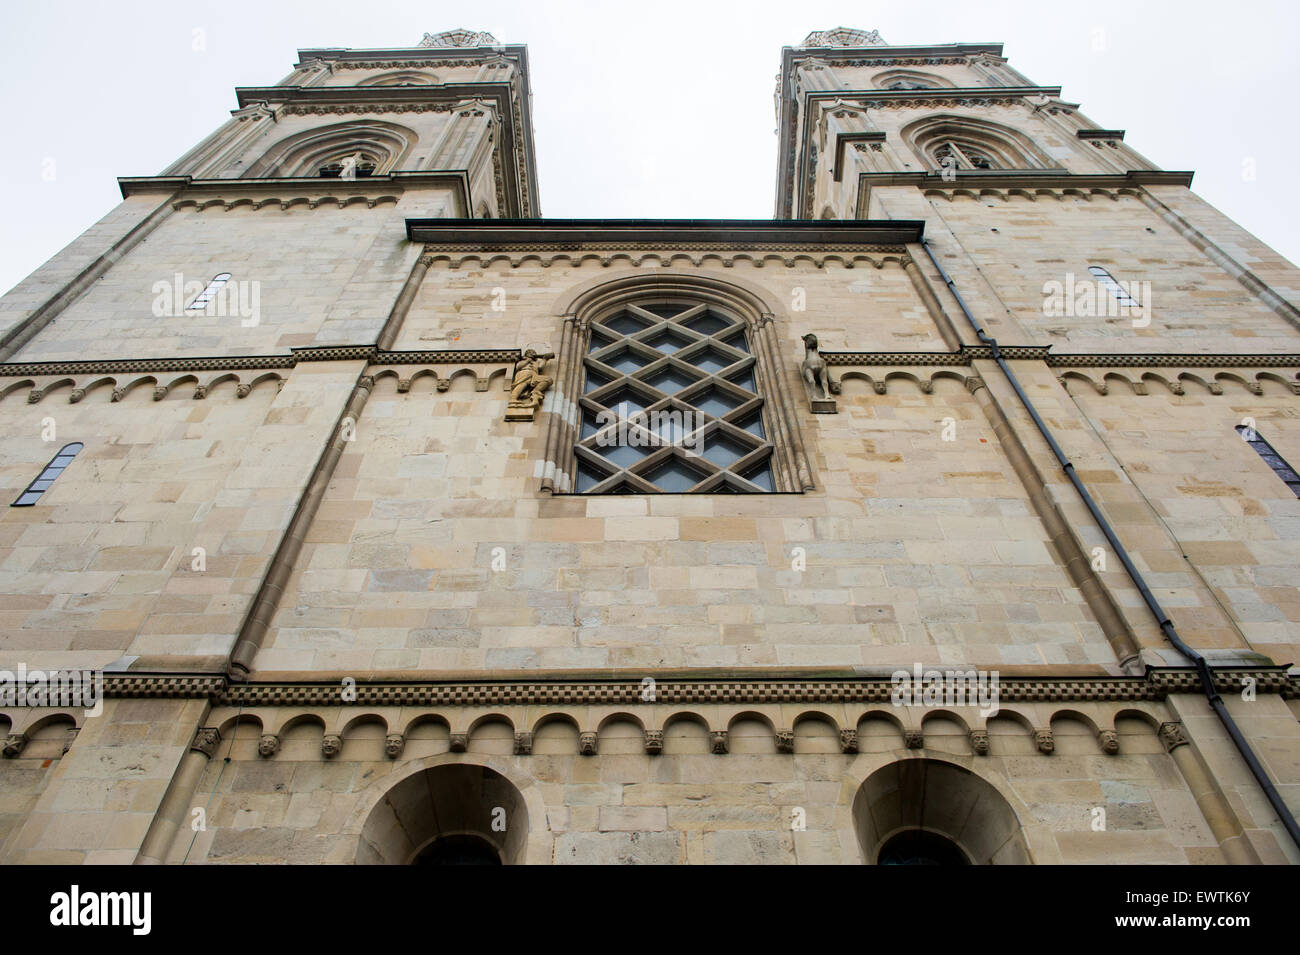 Architectural Detail on a church in Zurich Switzerland, Europe Stock Photo